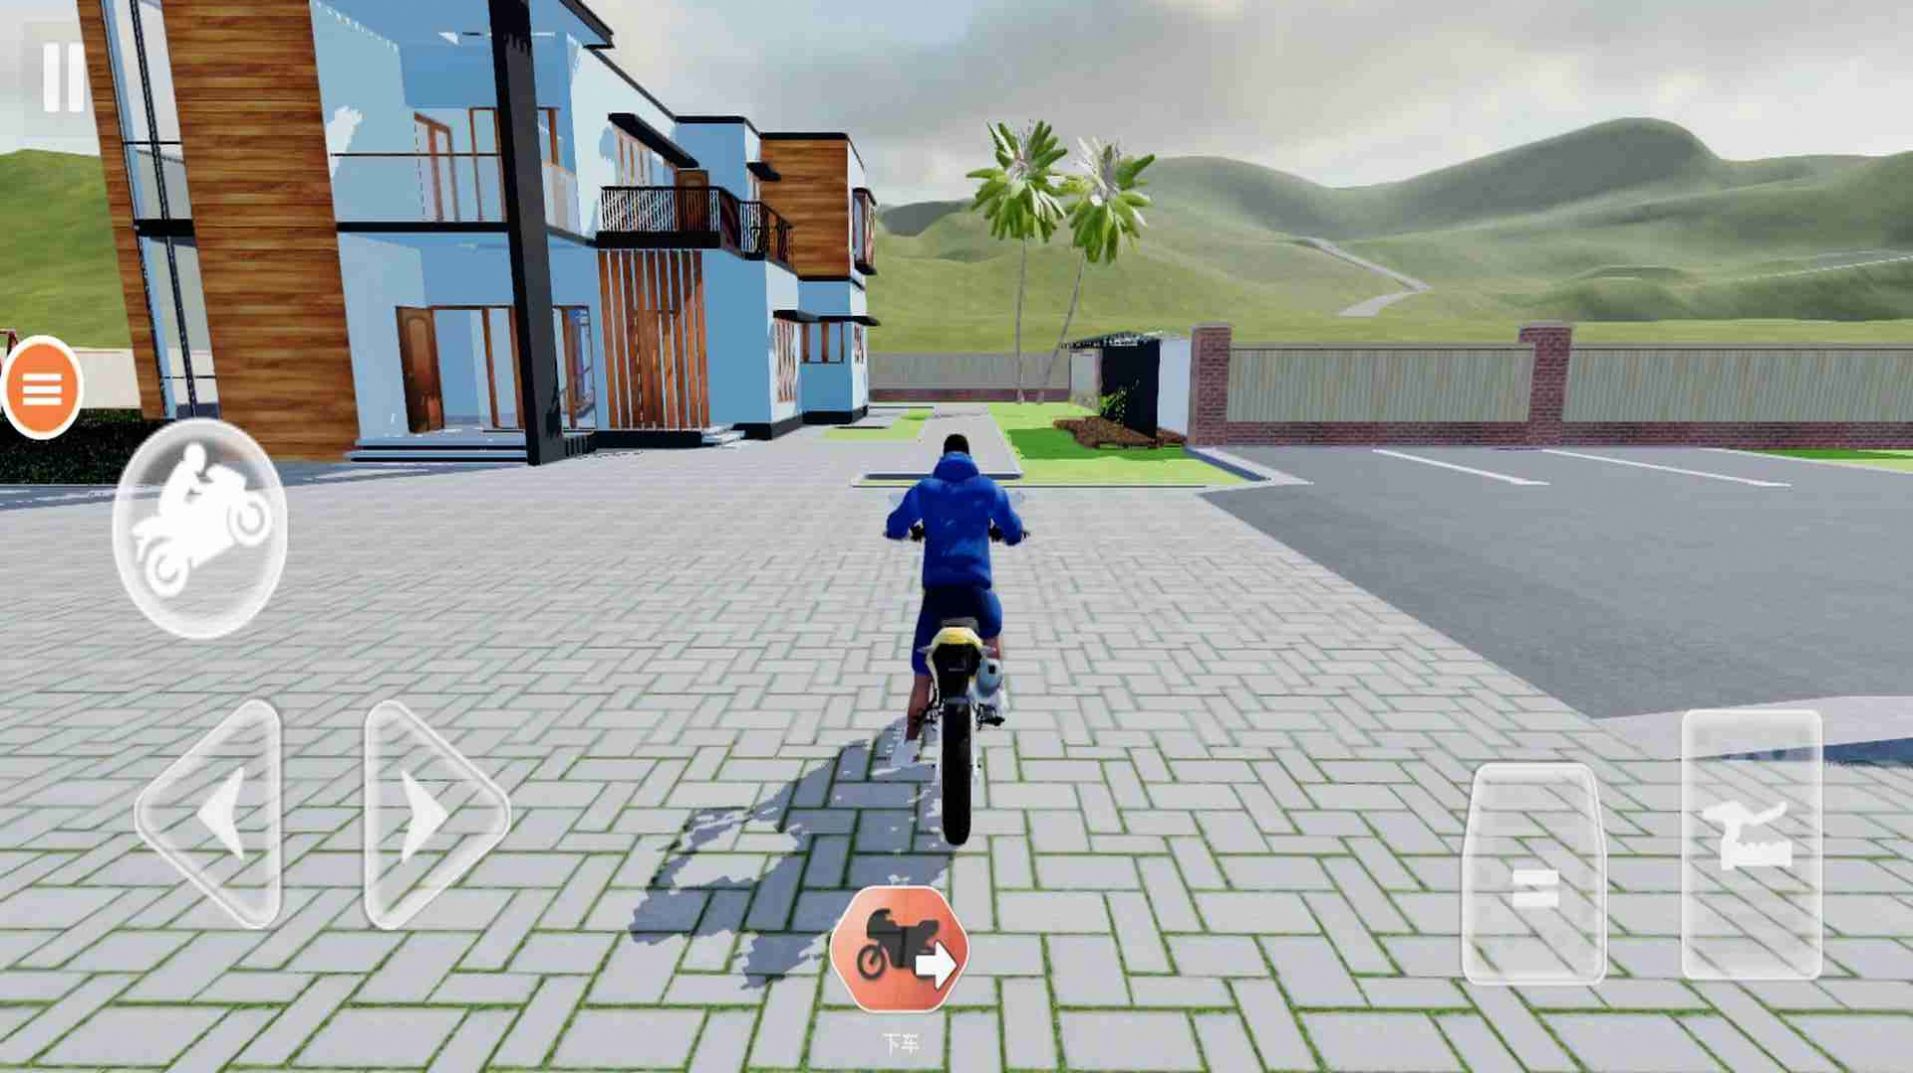 都市自由驾驶模拟游戏下载,都市自由驾驶模拟游戏官方版 1.0